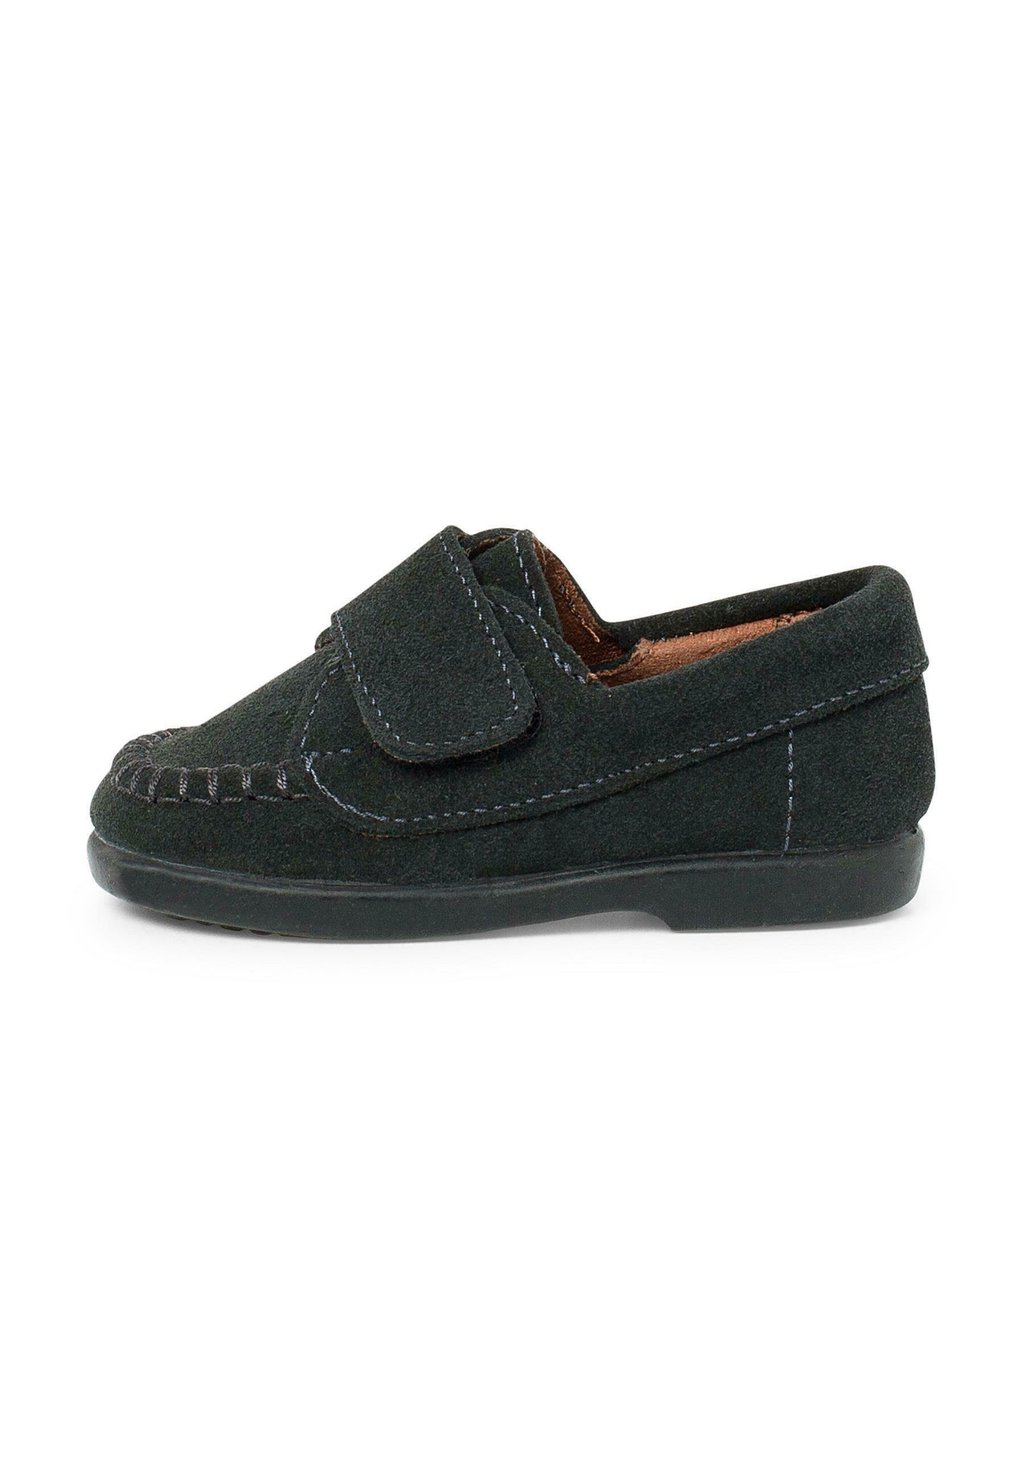 Обувь для обучения TIRA ADHERENTE Pisamonas, цвет gris обувь для обучения oxford pisamonas цвет gris oscuro